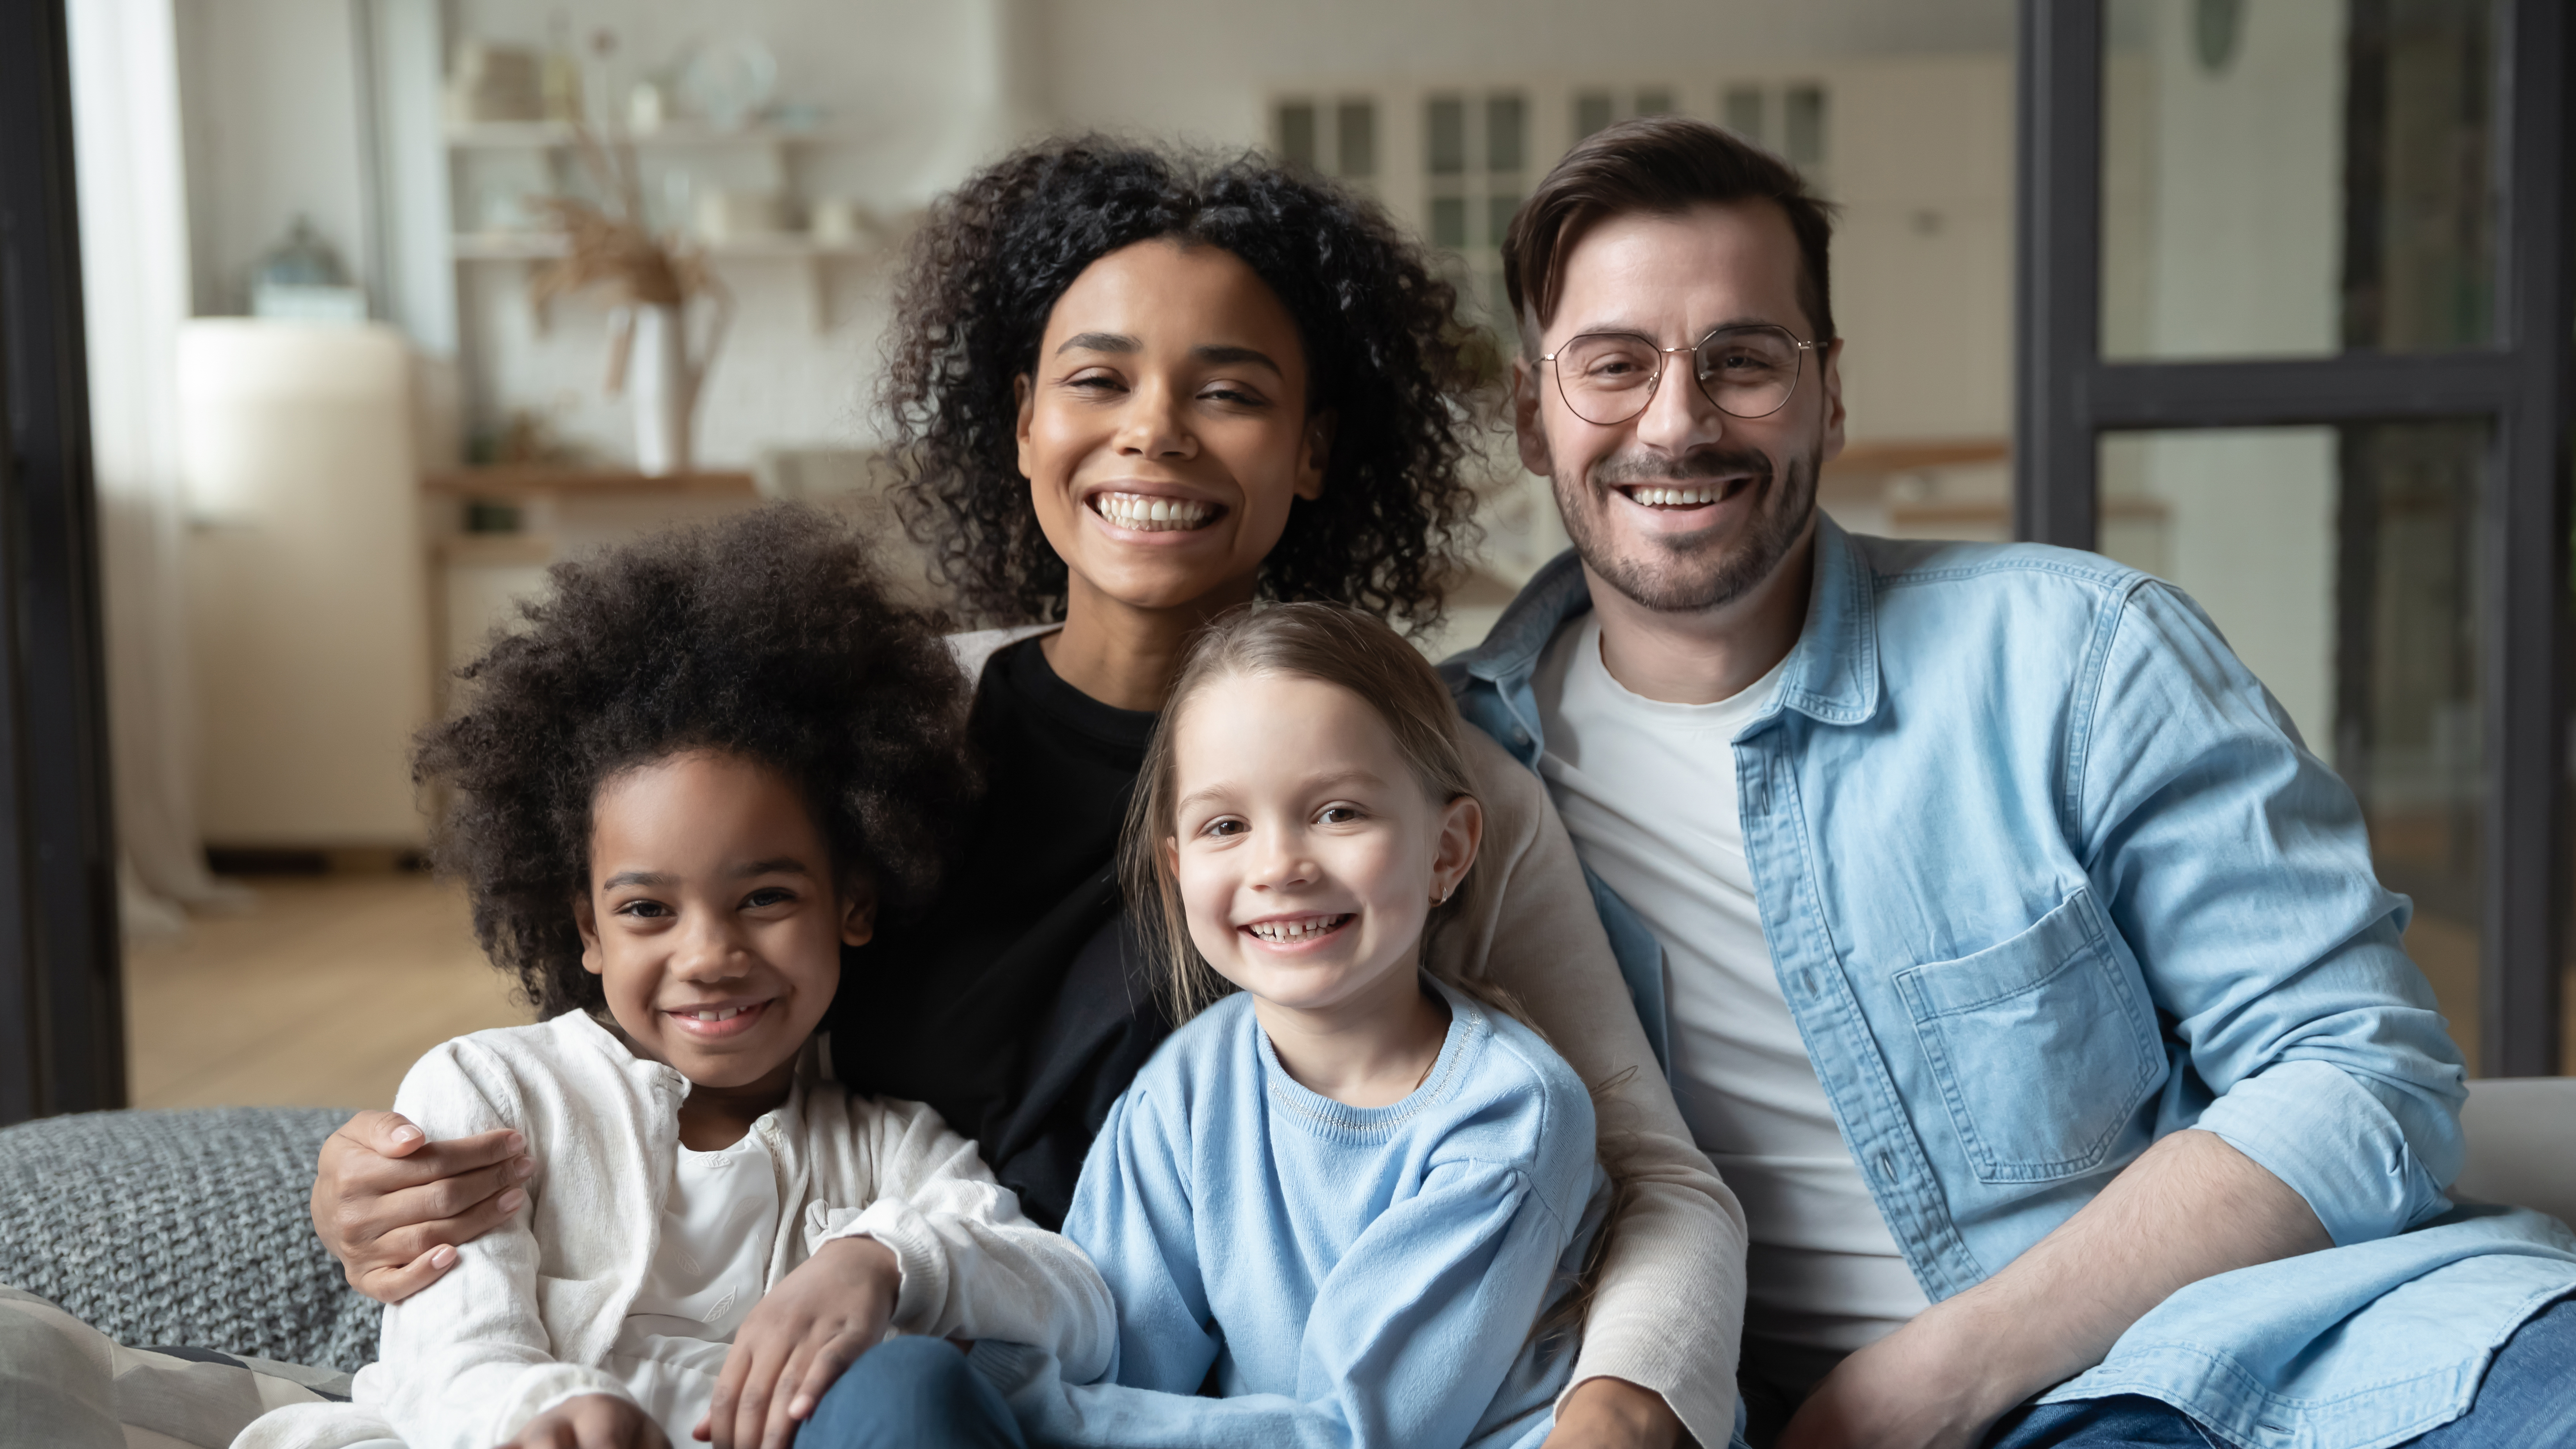 Eine gemischtrassige Familie, bestehend aus einem Vater, einer Mutter und ihren beiden Kindern | Quelle: Shutterstock